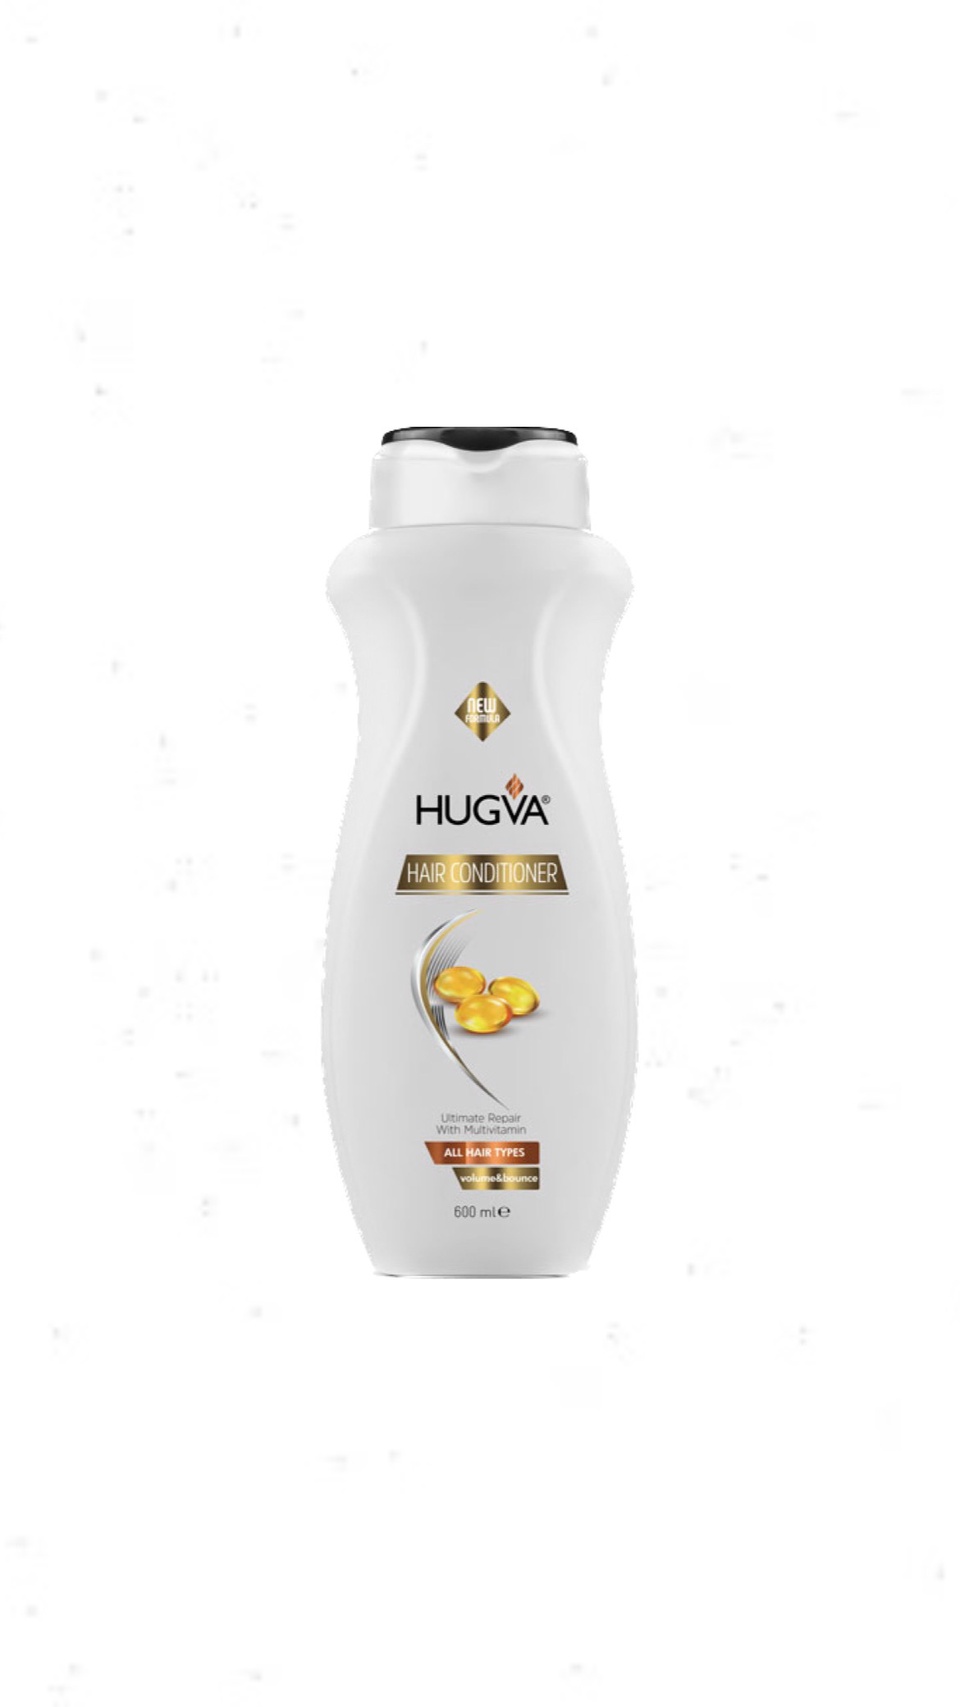 Hugva Hair Conditioner Кондиционер для вcех типов волос бессульфатный, 600 мл - 300 ₽, заказать онлайн.